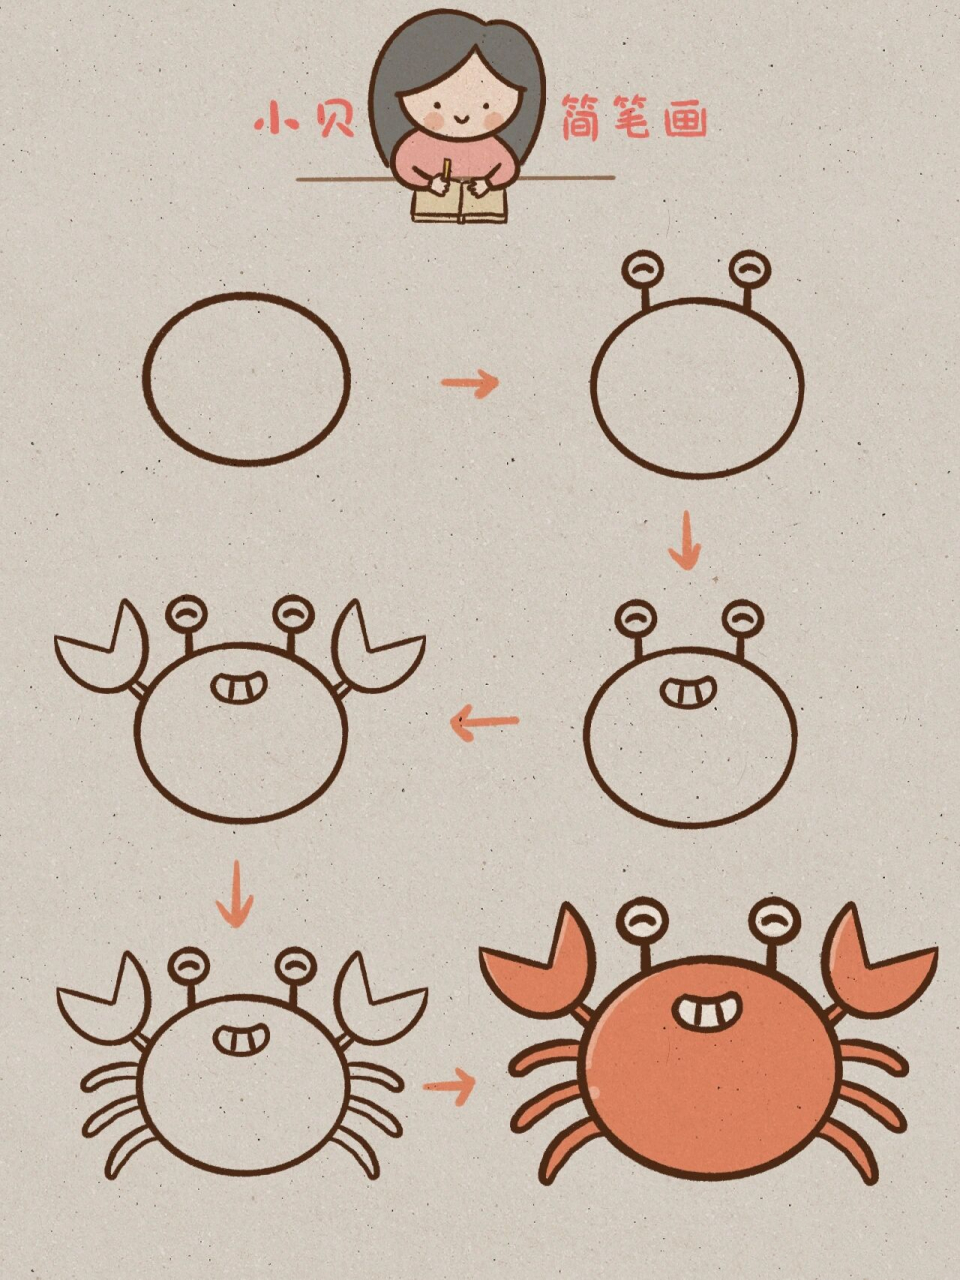 螃蟹简笔画 贝壳图片